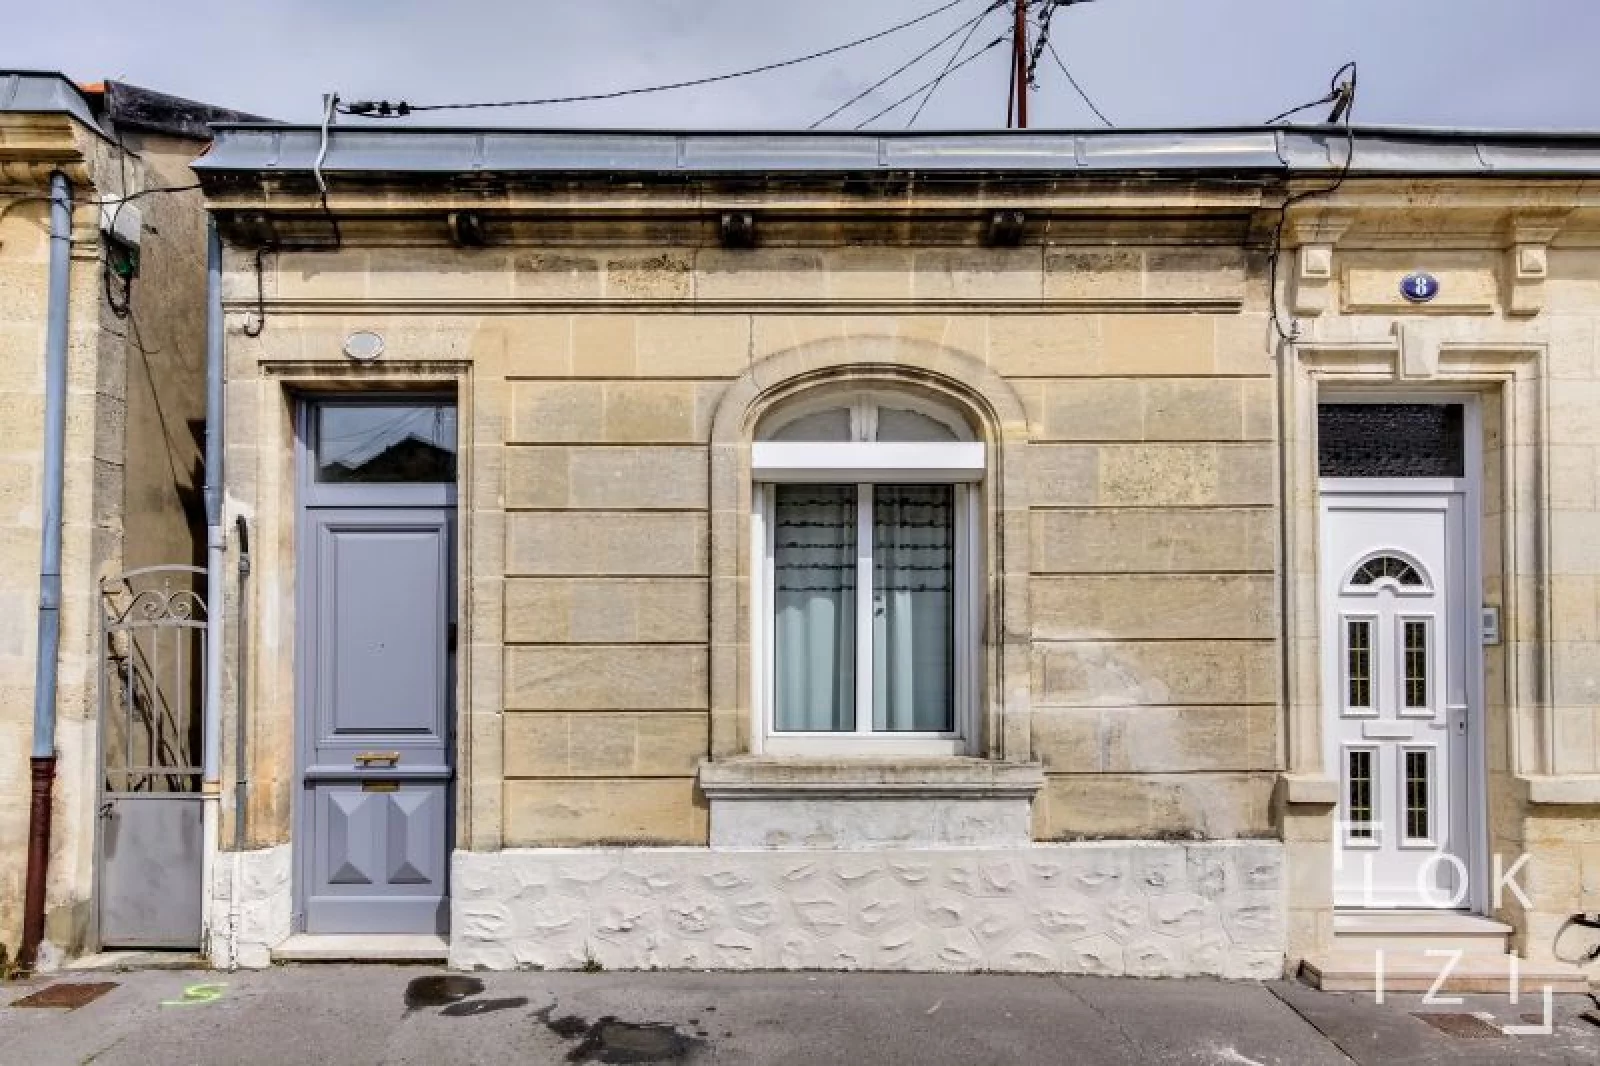 Location maison meublée 2 pièces 48m² (Bordeaux - Nansouty)